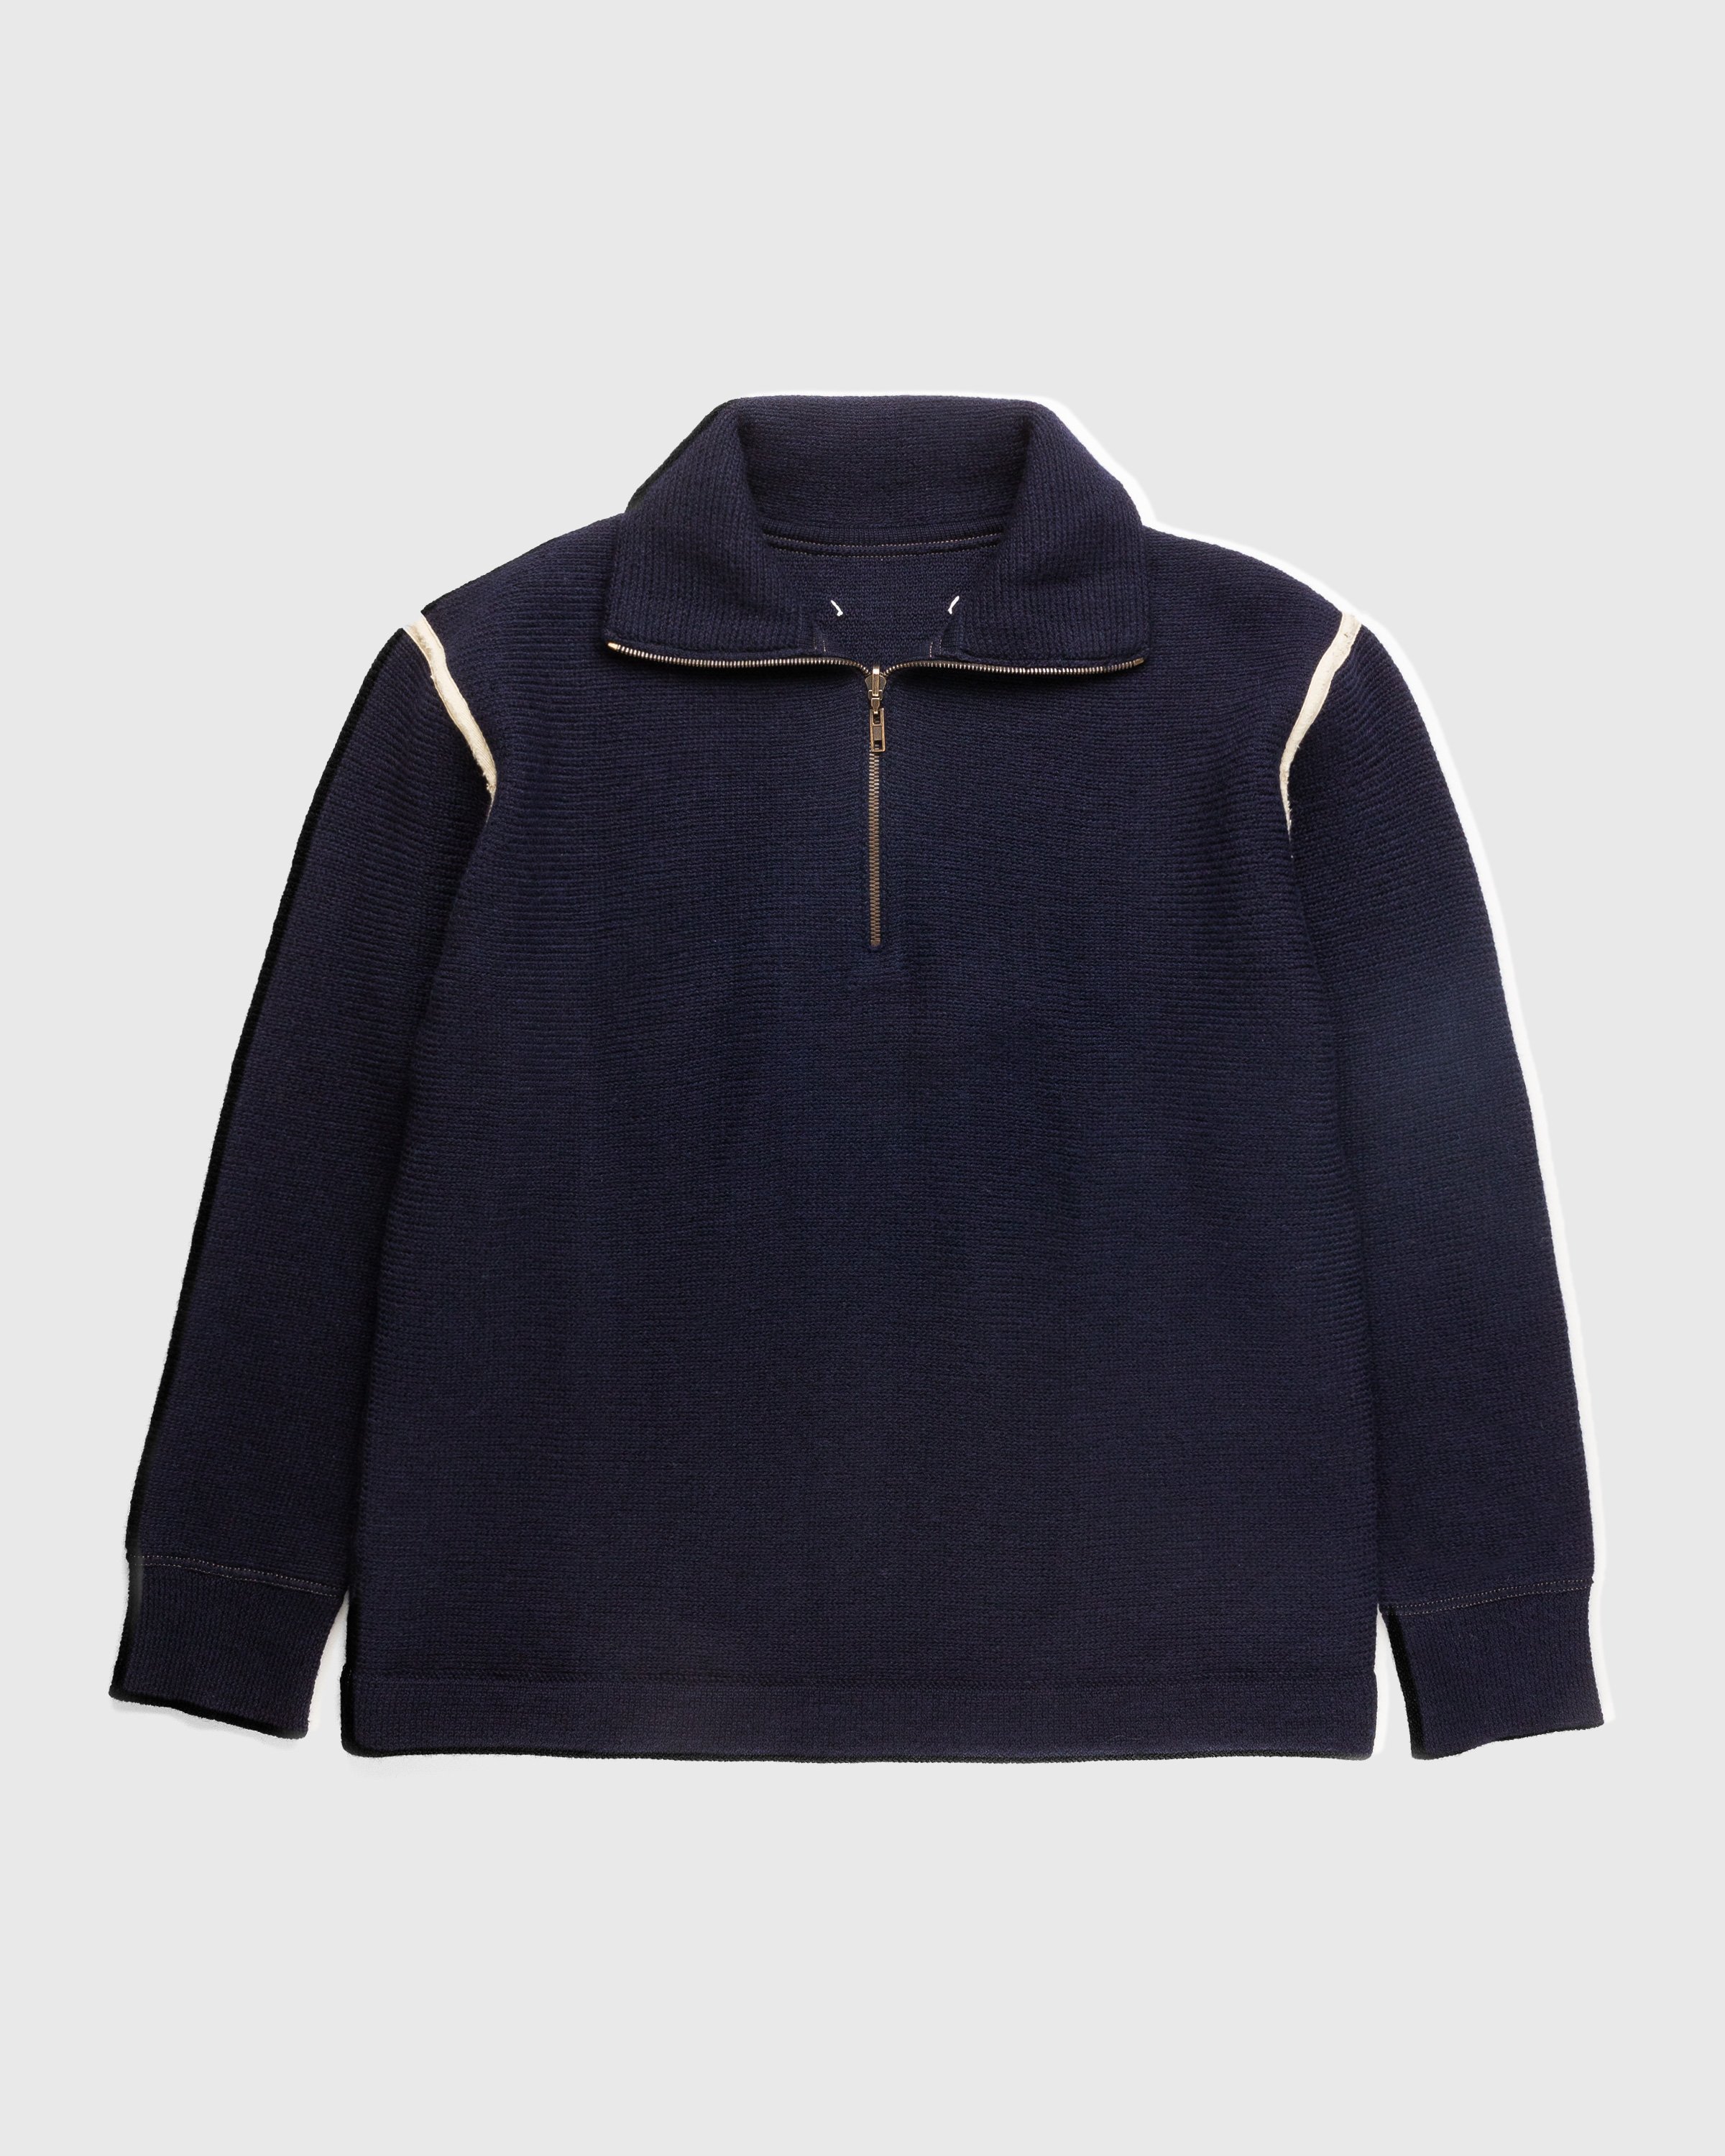 Maison Margiela - Wool Half-Zip Sweater Navy Blue - Clothing - Blue - Image 1